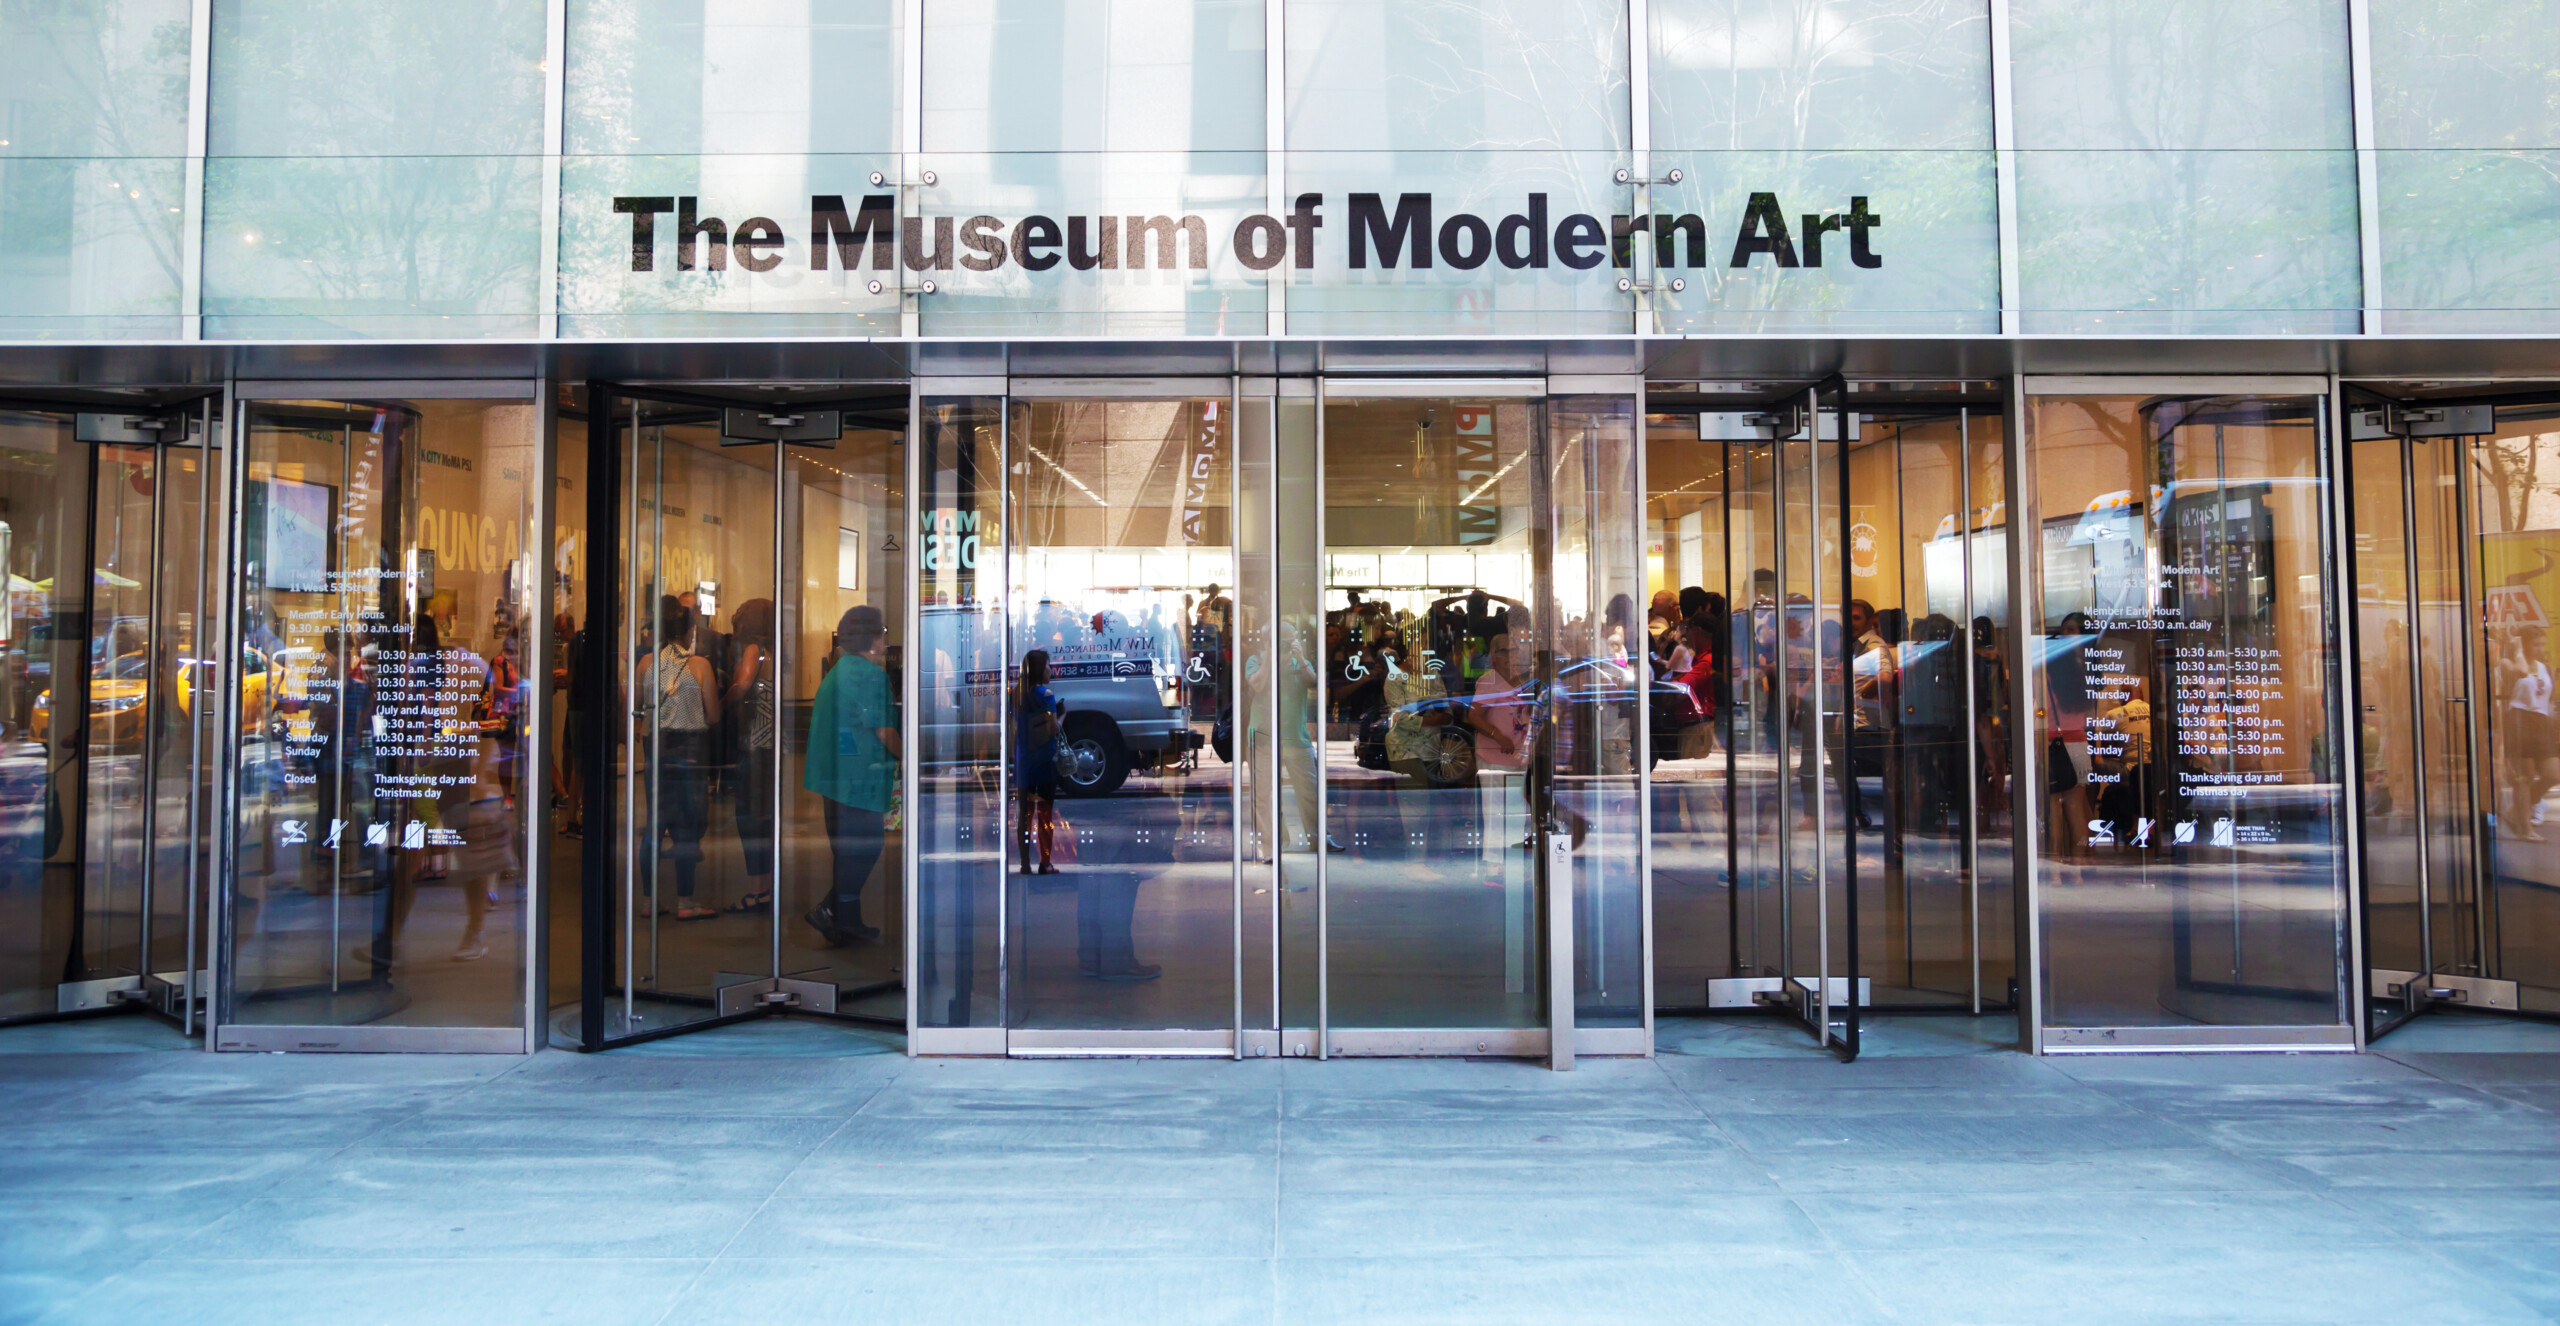 Nowy Jork, Usa - 10 sierpnia 2015: wejście do Muzeum Sztuki Nowoczesnej z zewnątrz., licencja: shutterstock/By